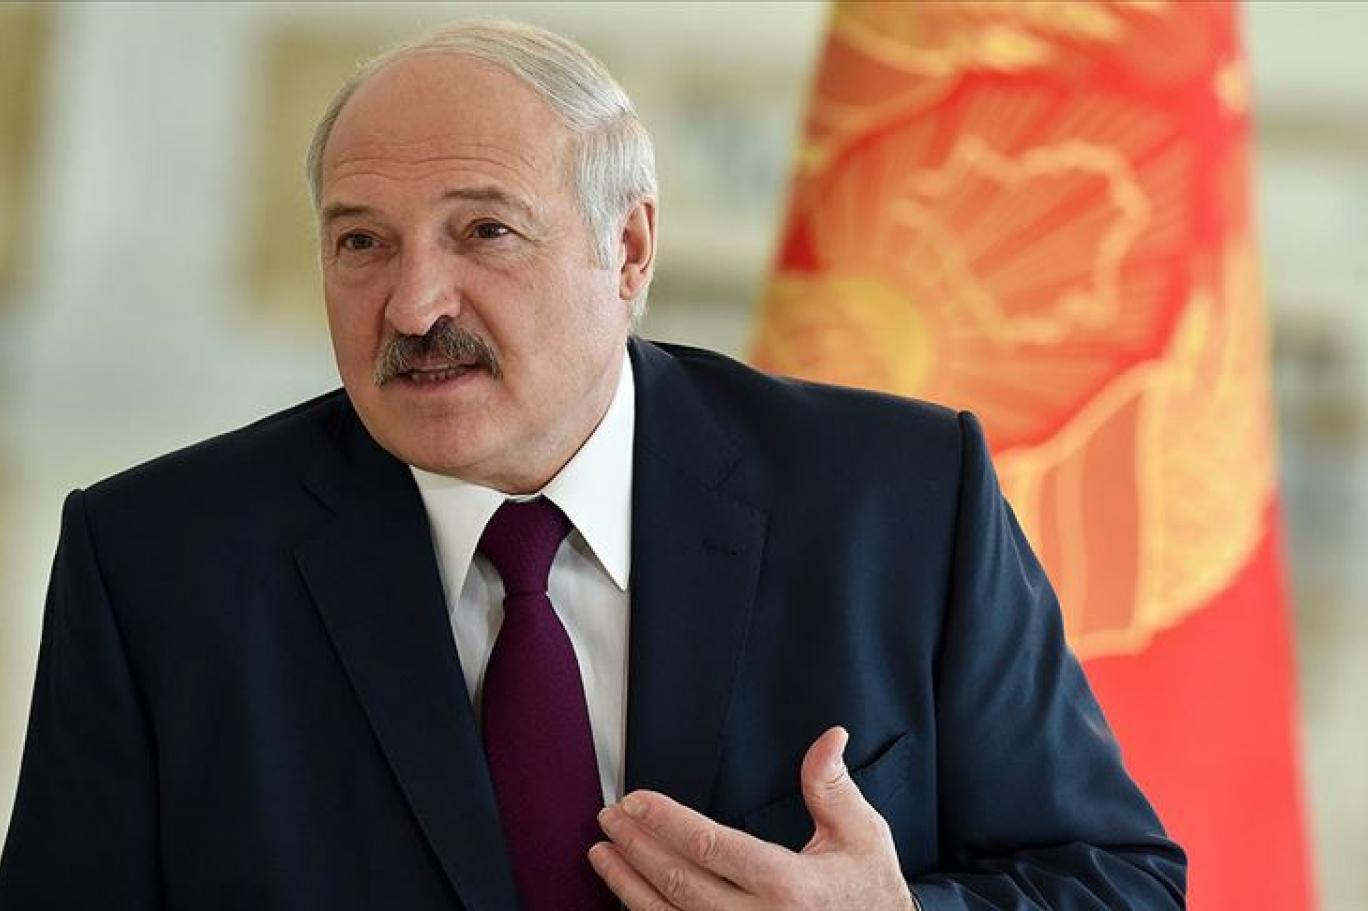 Aleksandr Lukaşenko Rusiyadan dəstək alan rəqiblərini zərərsizləşdirir